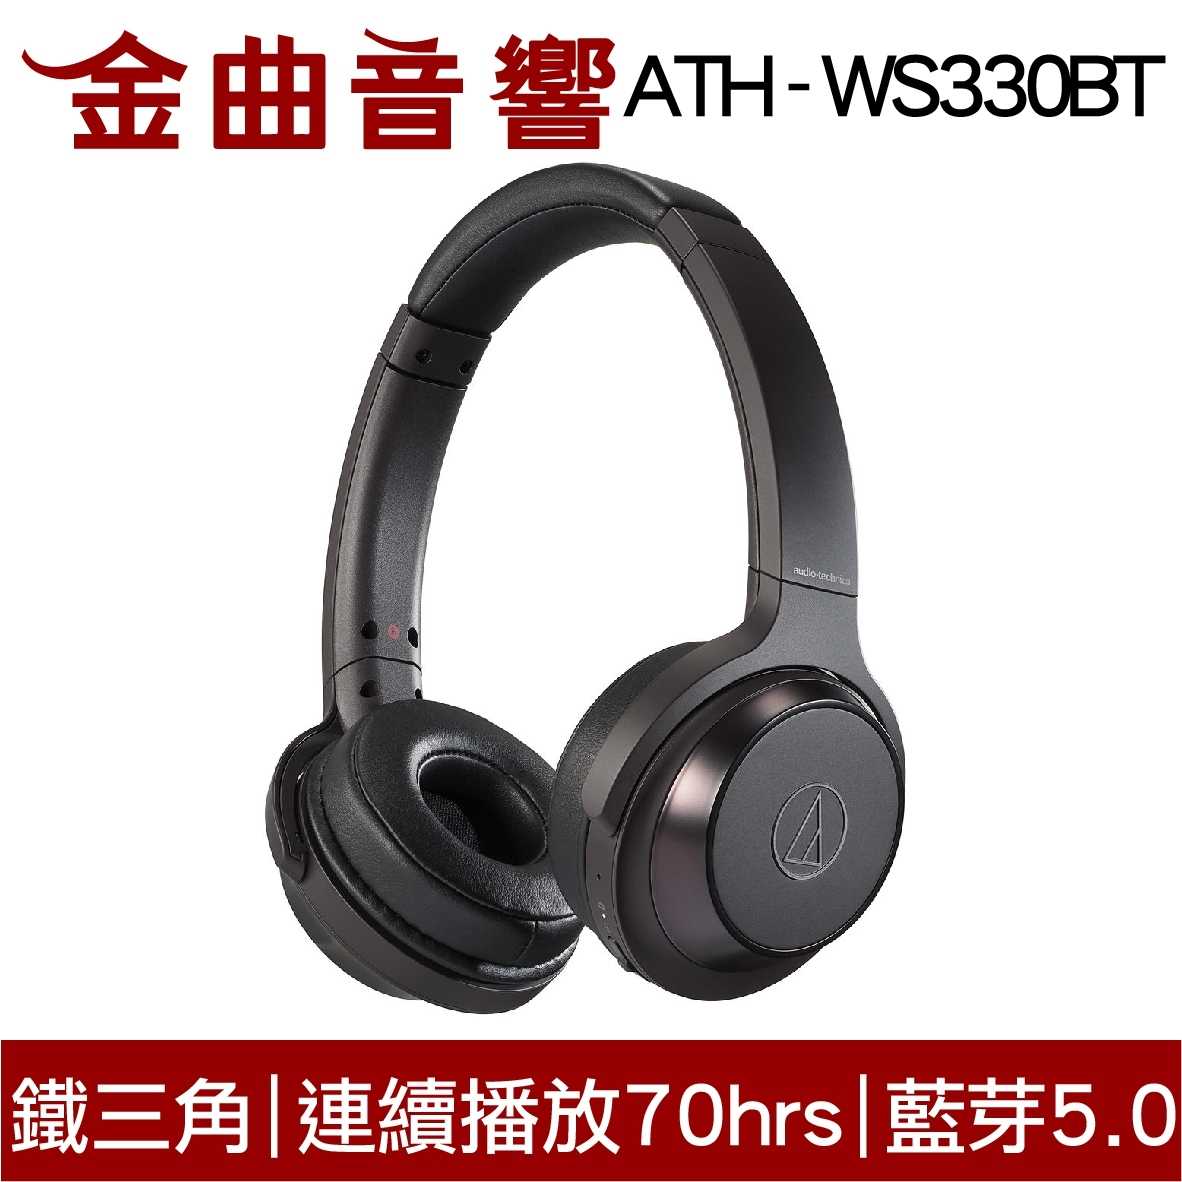 鐵三角 ATH-WS330BT 黑色 兒童耳機 大人 皆適用 無線藍牙耳機 重低音 | 金曲音響